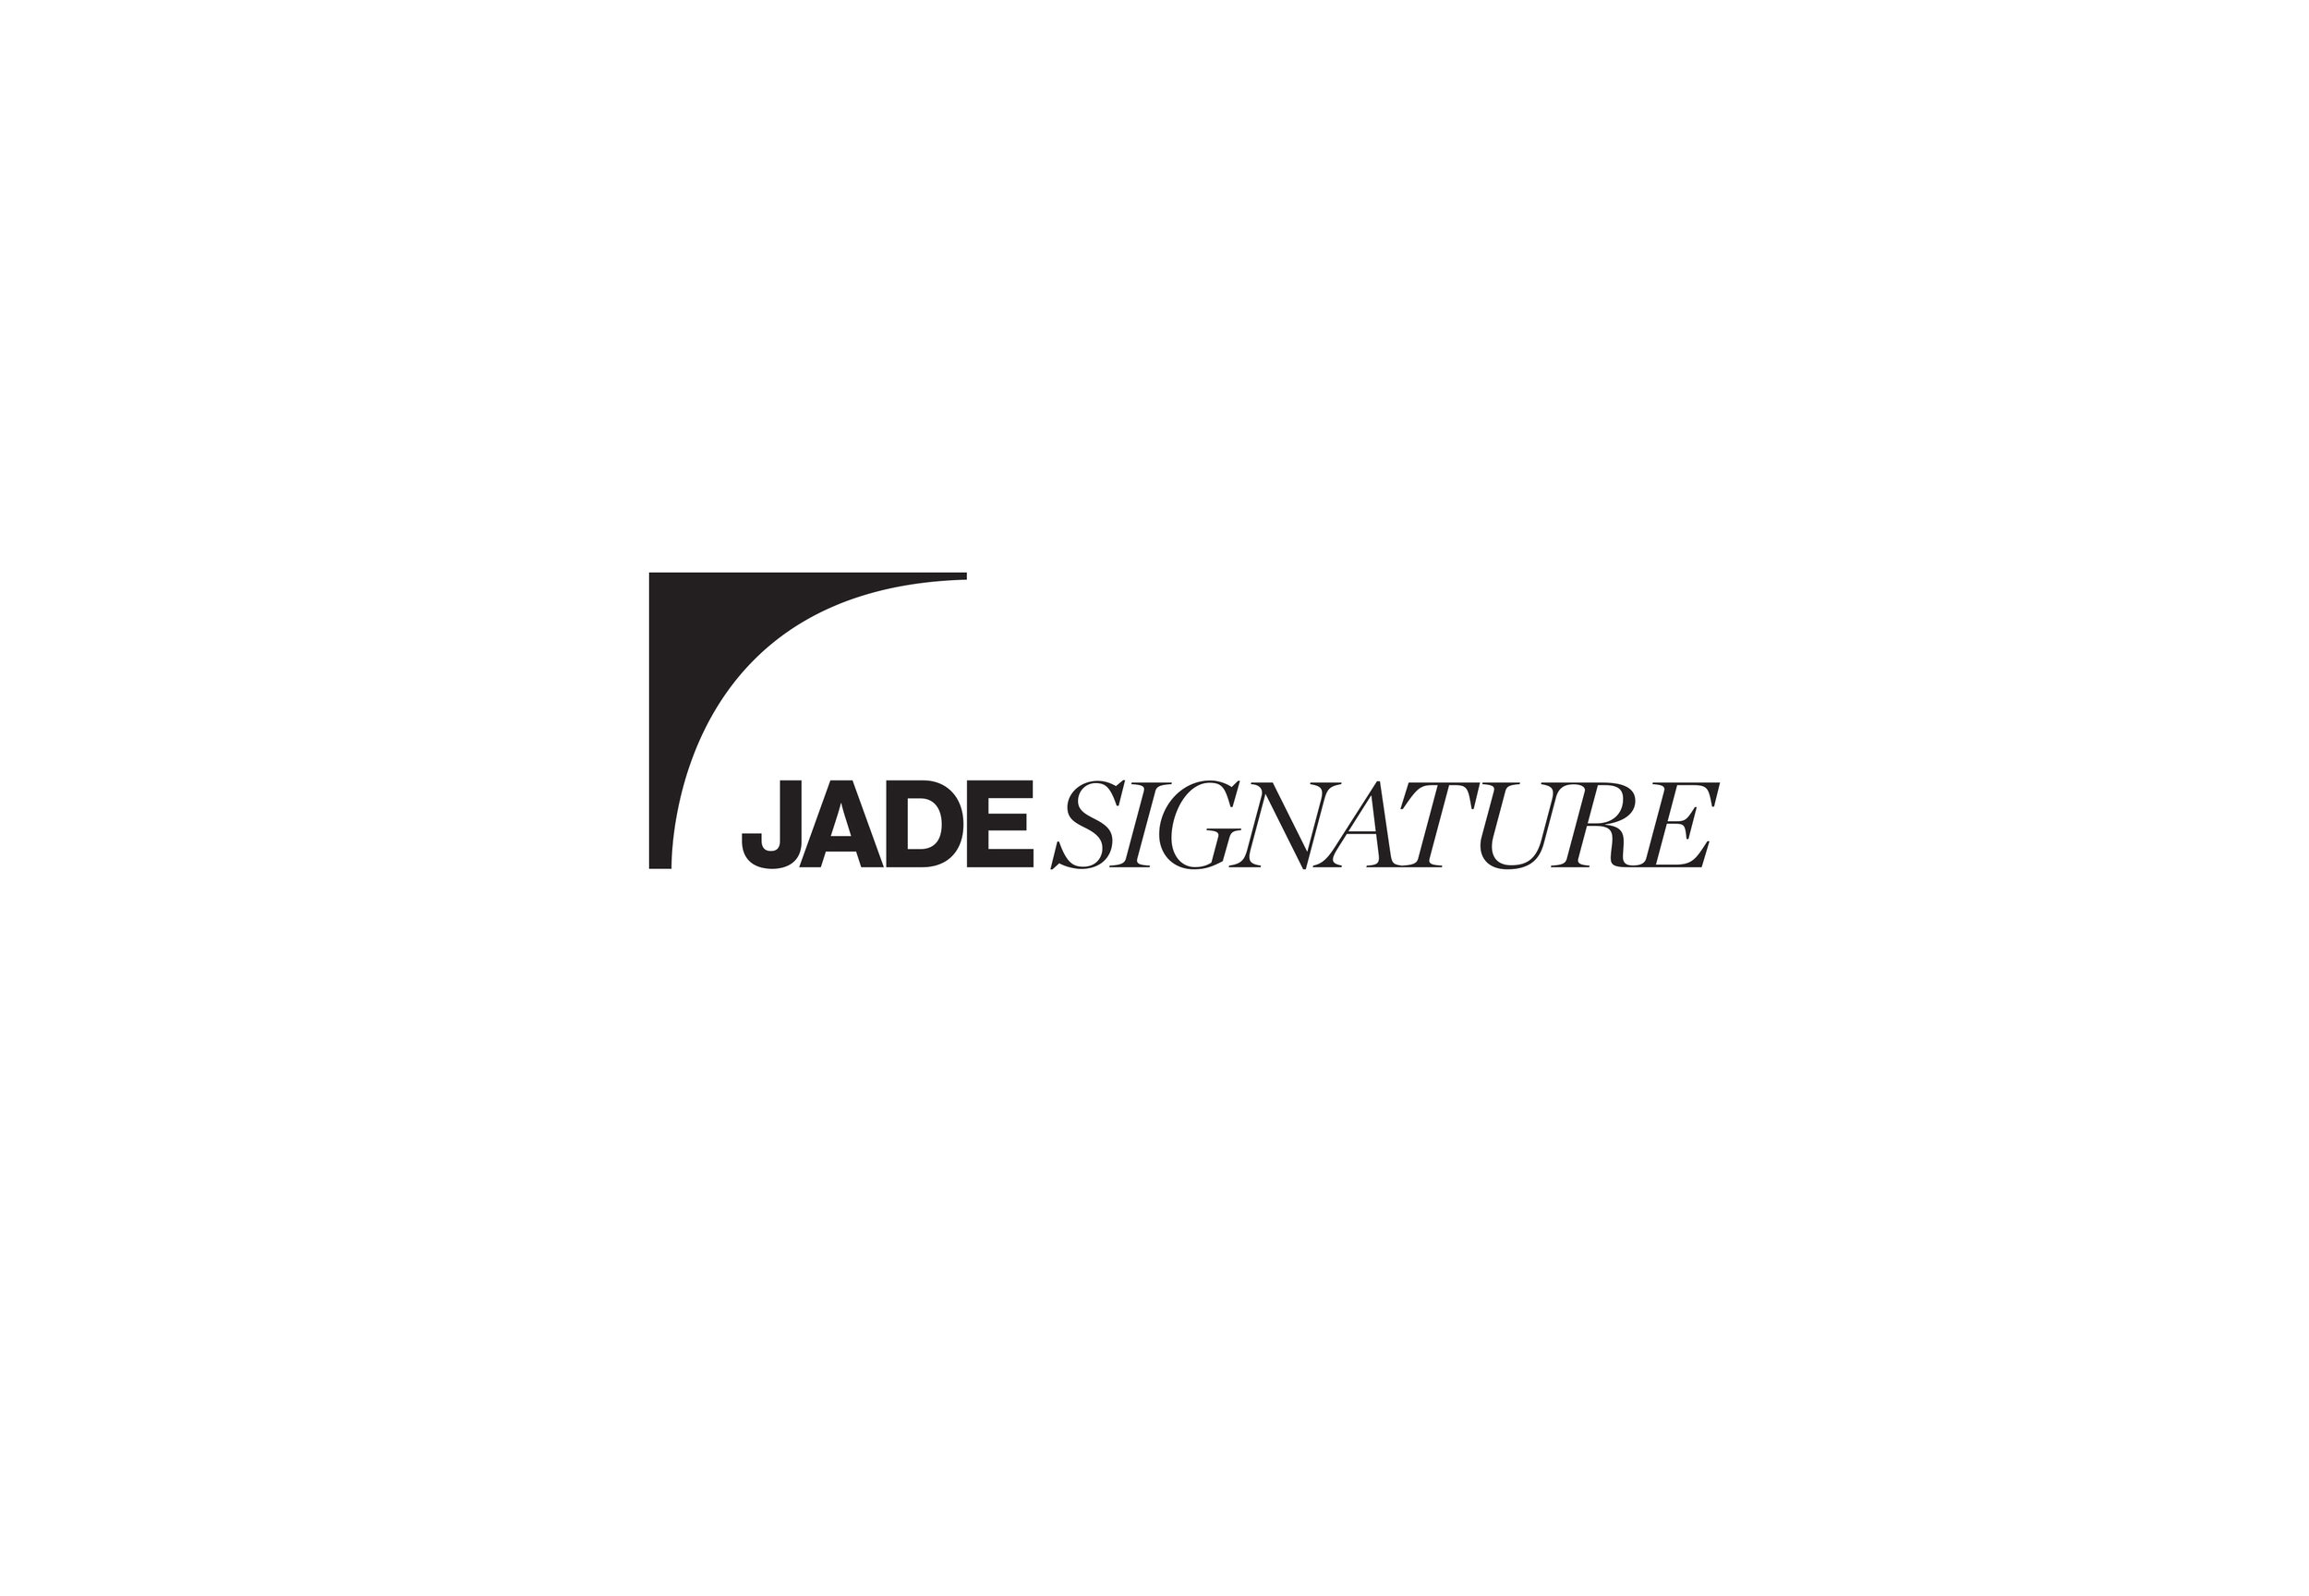 Jade Signature